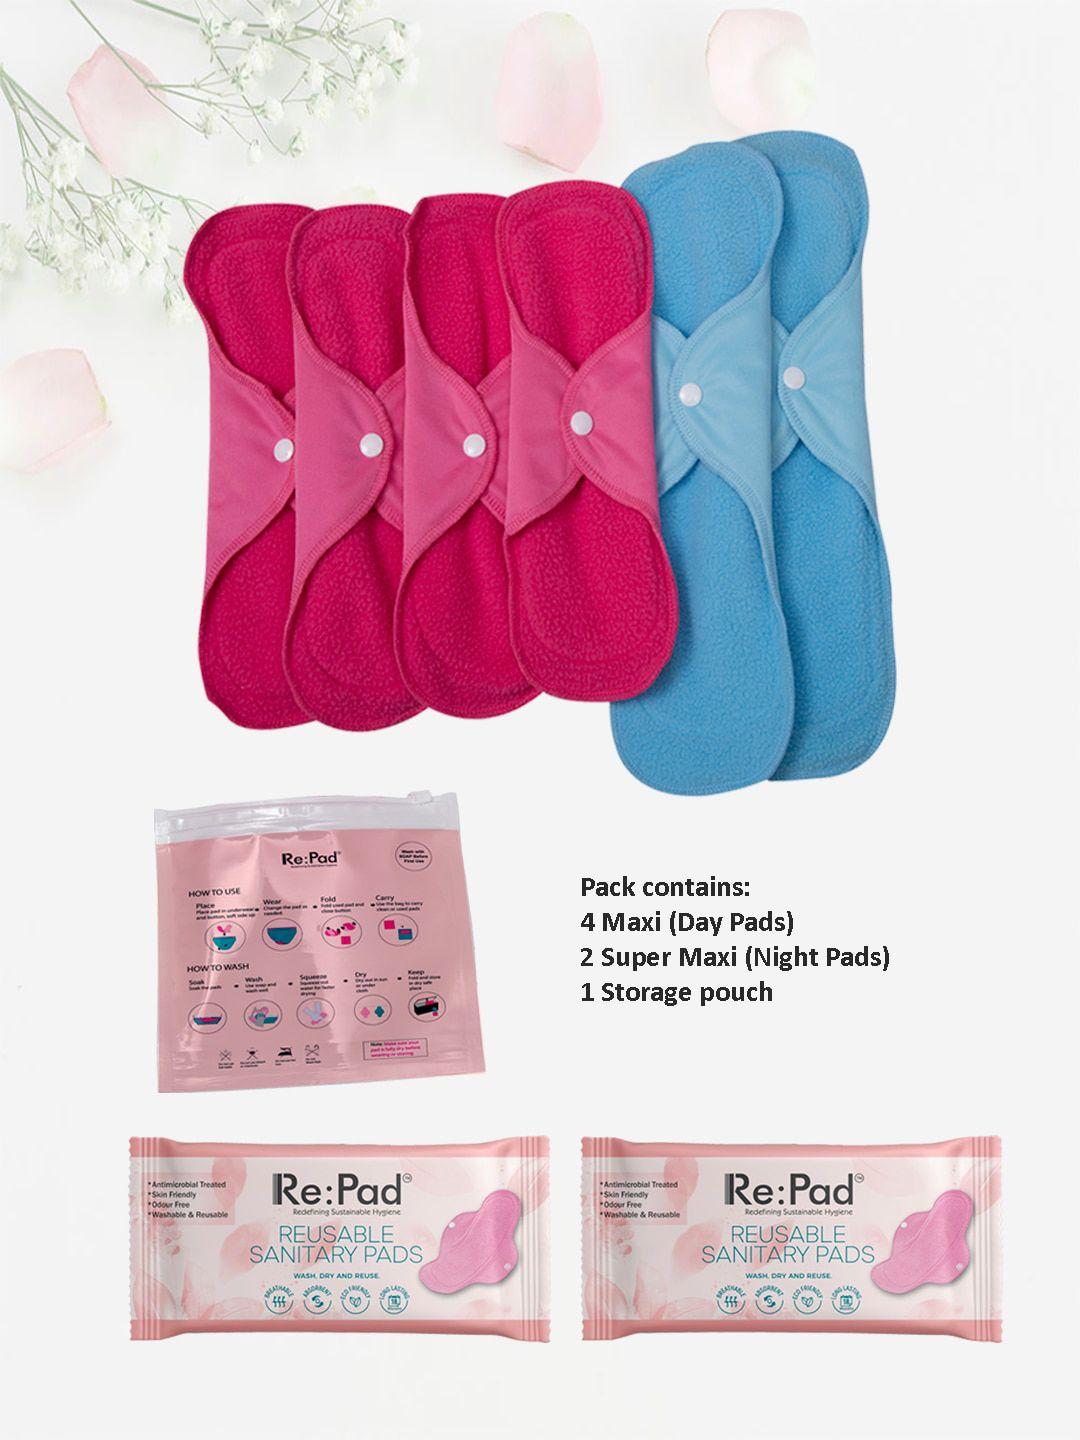 repad reusable sanitary pads 4 maxi & 2 super maxi pads